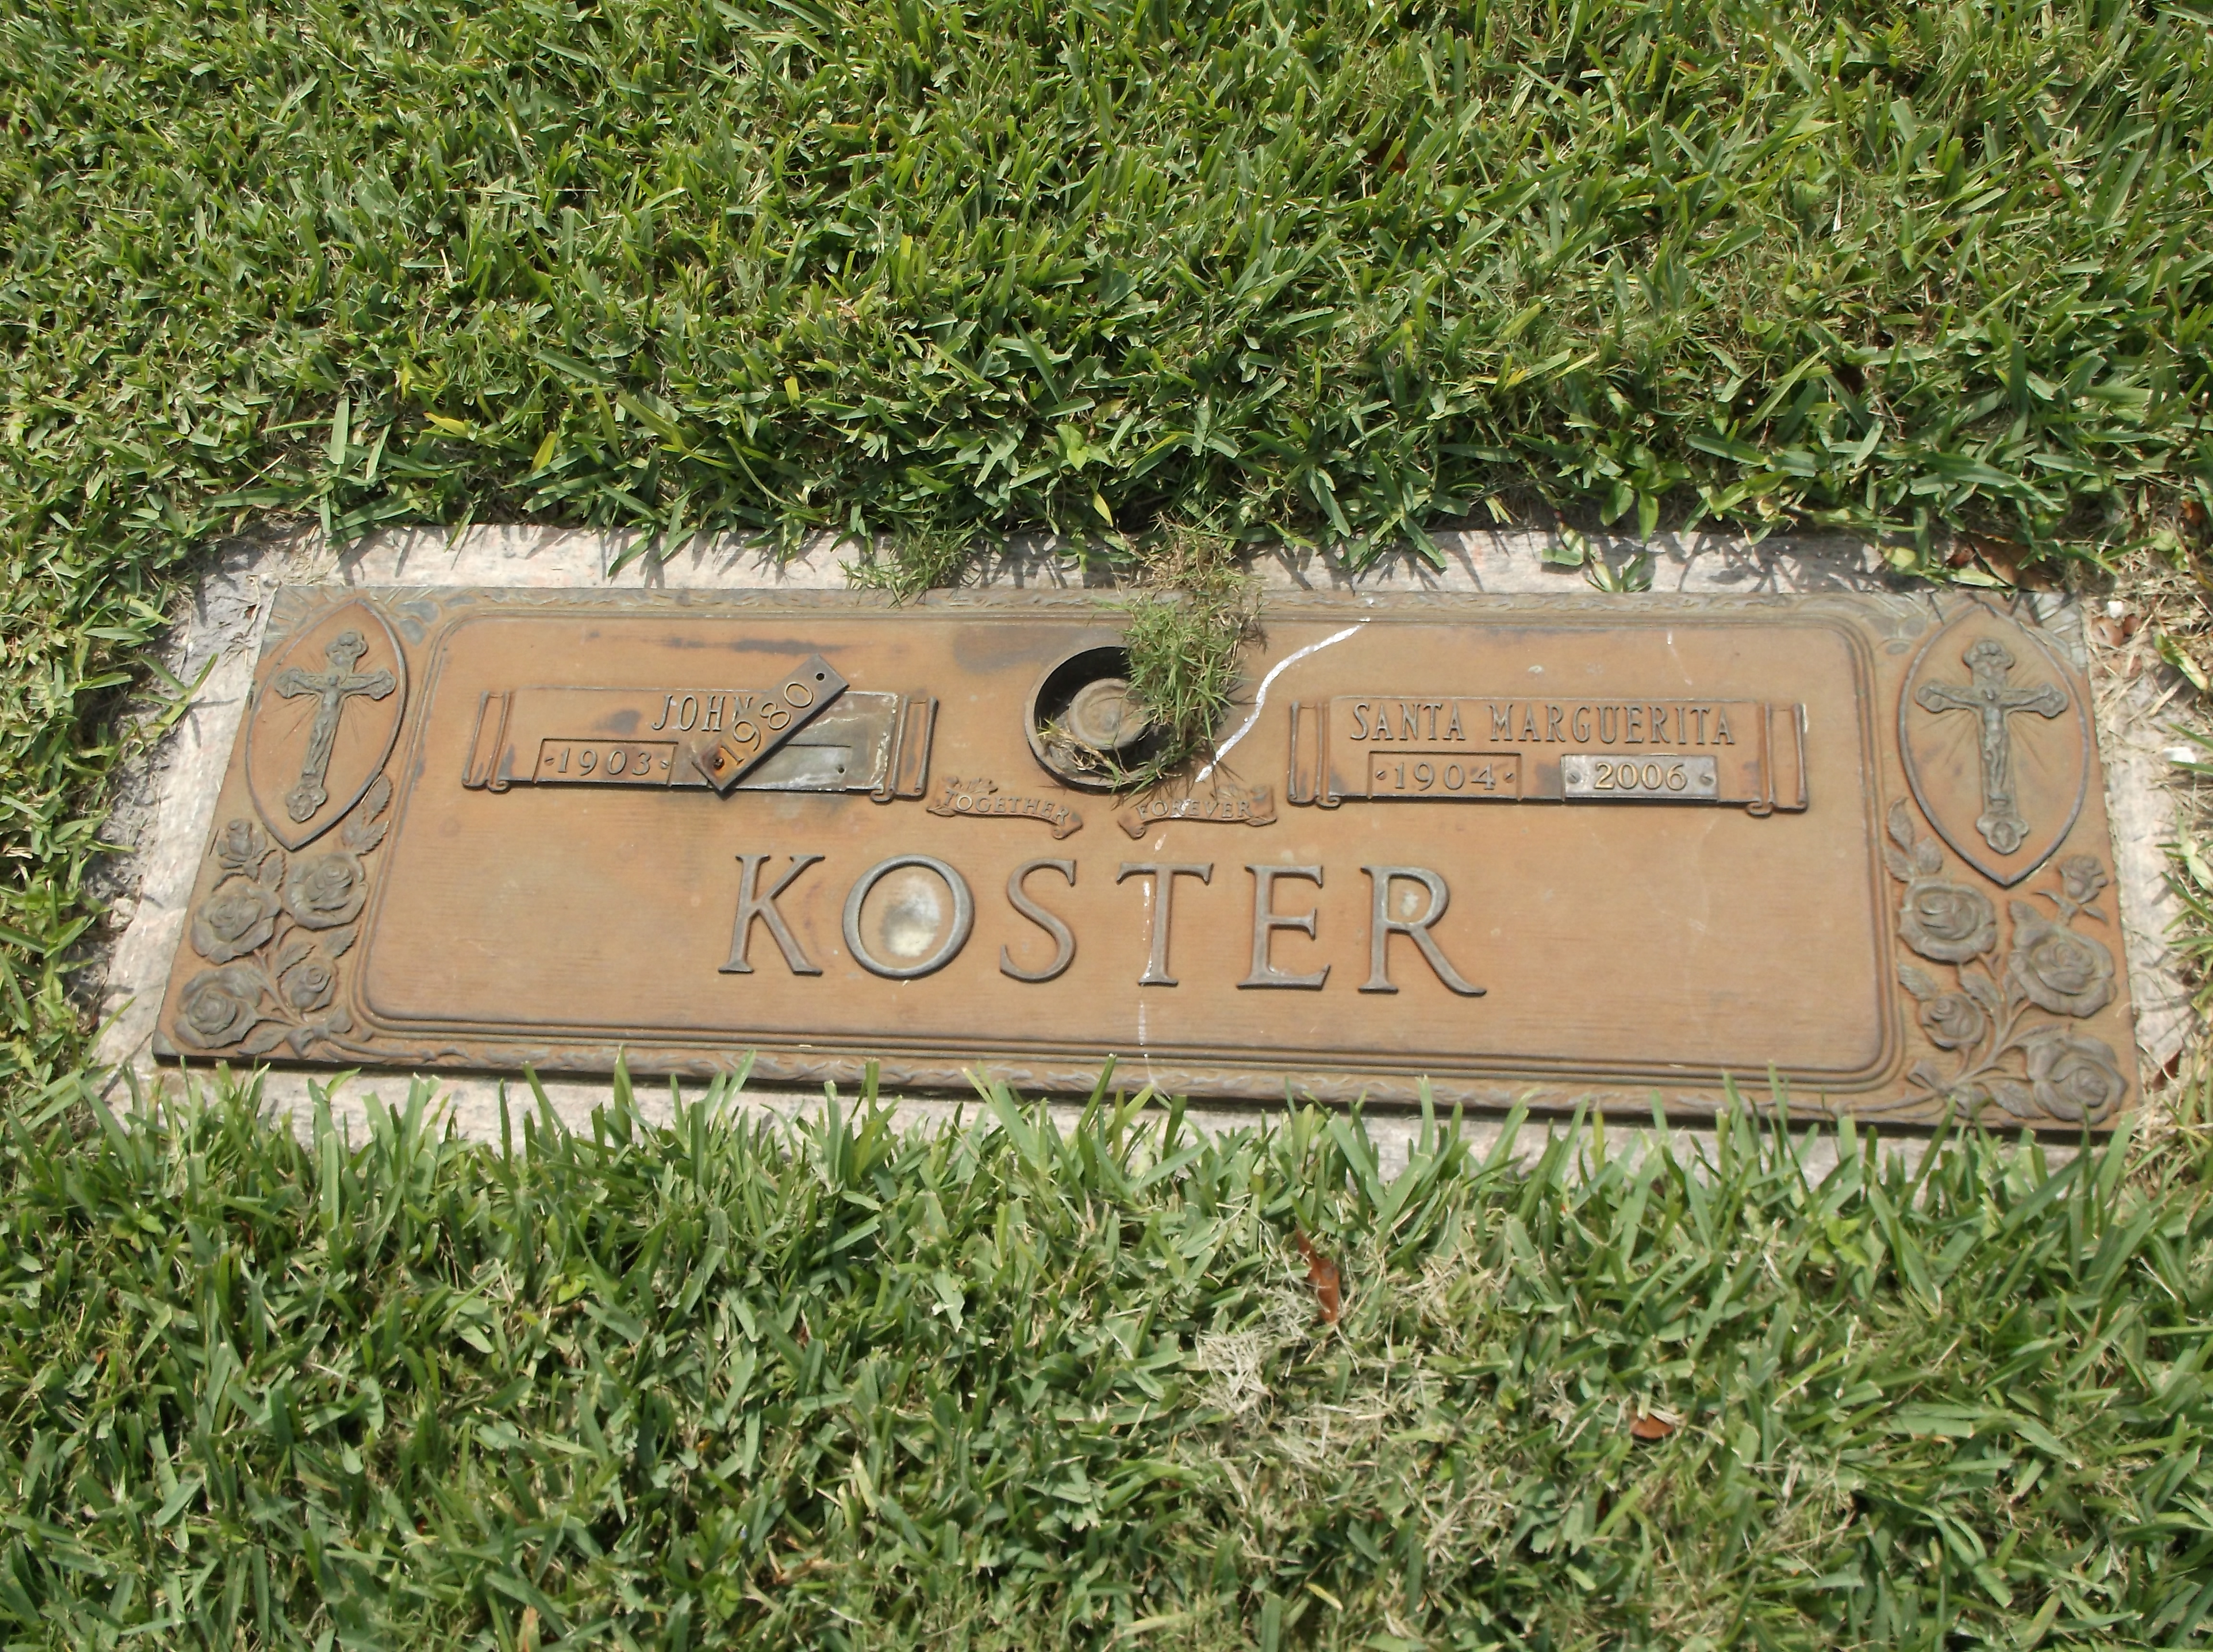 John Koster